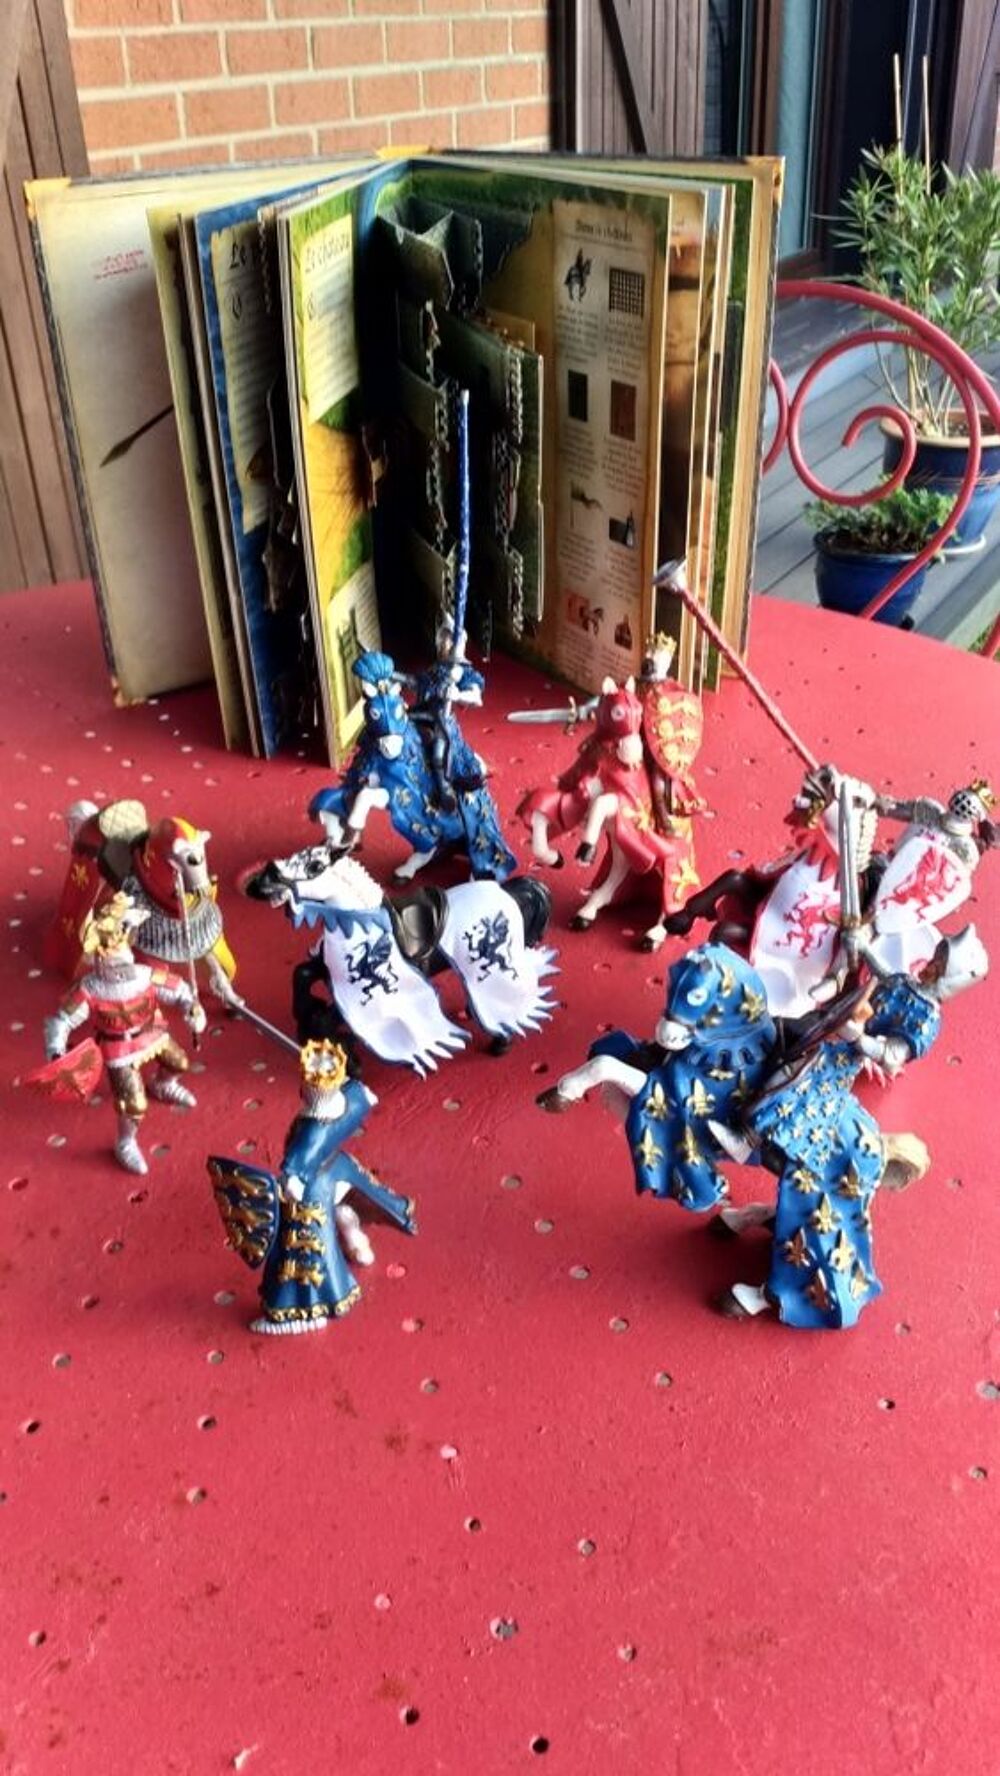 6 chevaliers papo avec montures et livre 3D Jeux / jouets